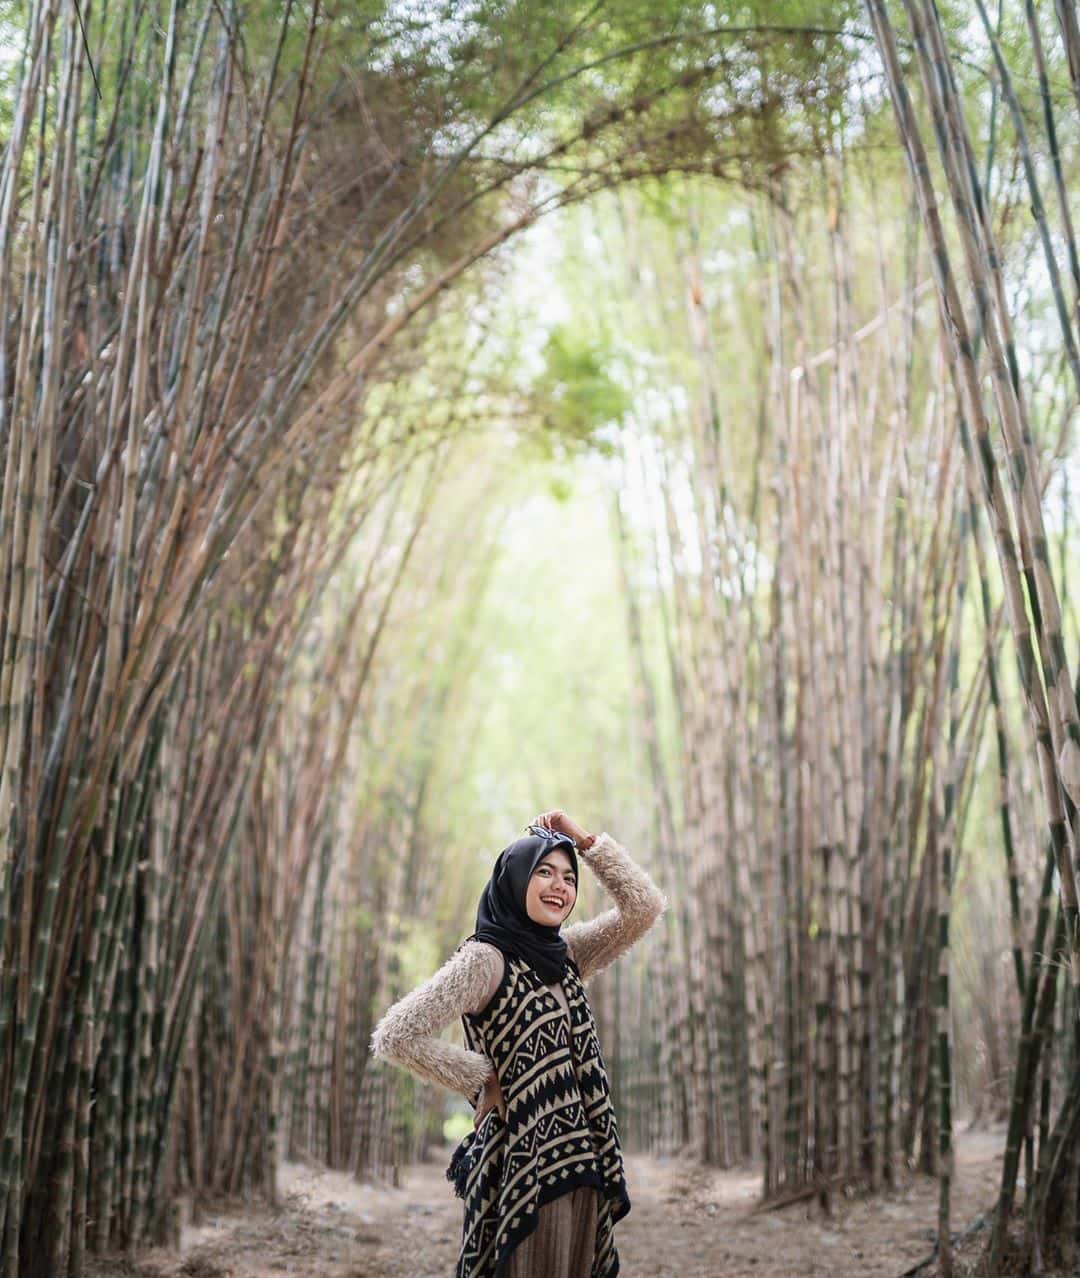 Hutan Bambu Keputih, Wisata Hijau dan Sejuk di Dalam Kota Surabaya